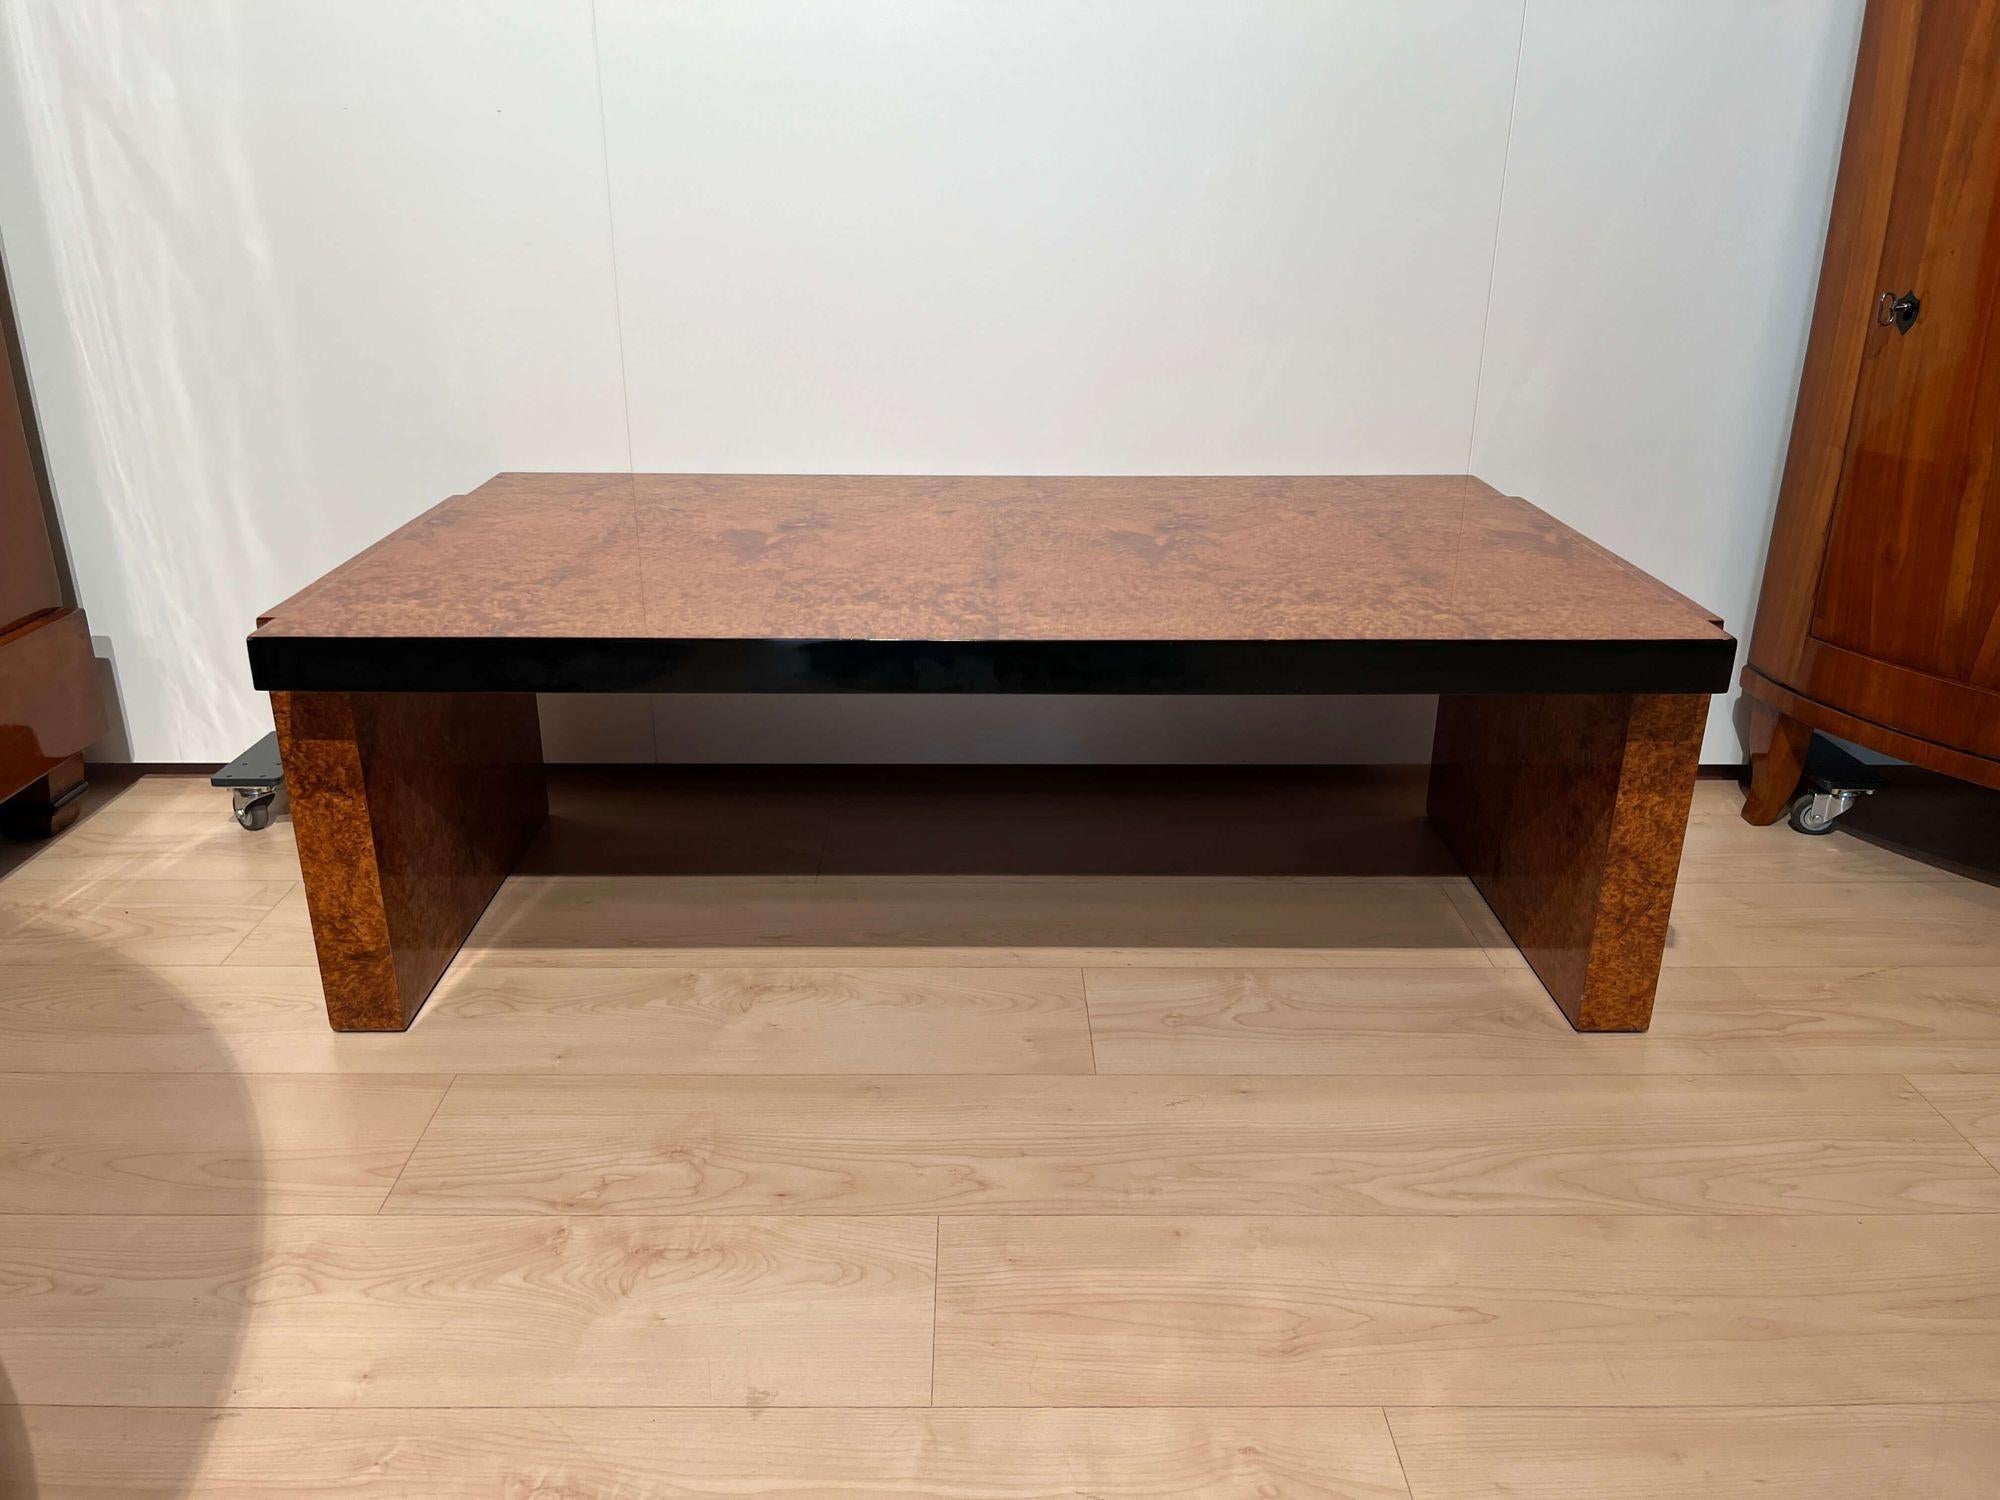 Canapé rectangulaire bas de table basse art déco de France vers 1930.
Bois de racines d'Amboyna plaqué et laqué. Laqué noir sur les bords.
Dimensions : H 40,5 cm x L 122 cm x P 68 cm